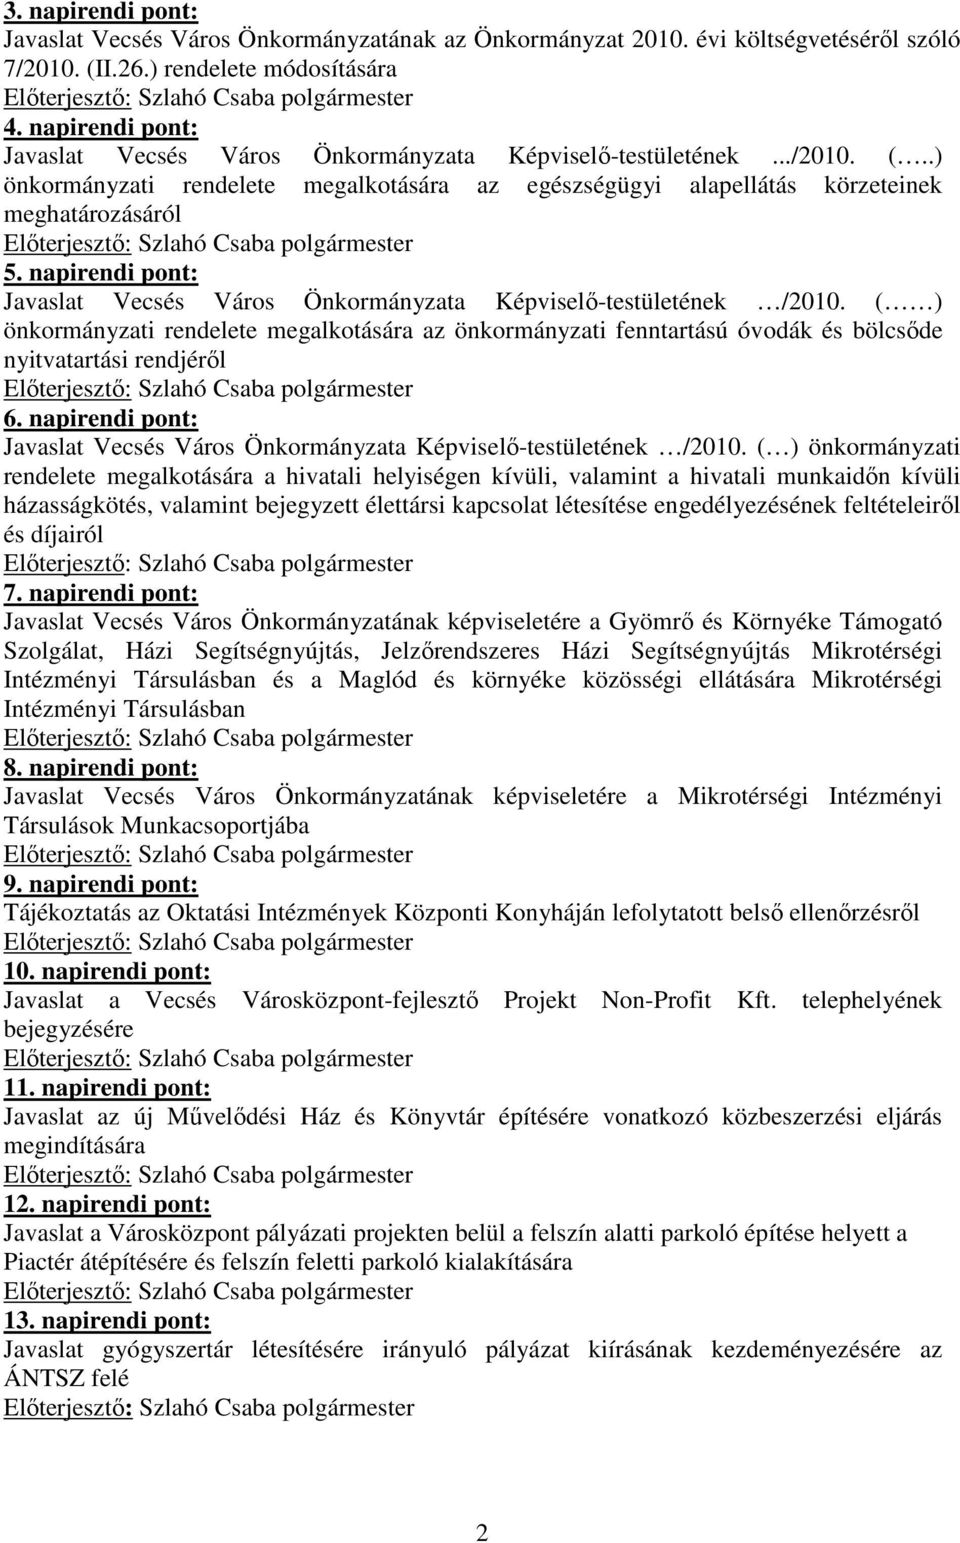 napirendi pont: Javaslat Vecsés Város Önkormányzata Képviselı-testületének /2010. ( ) önkormányzati rendelete megalkotására az önkormányzati fenntartású óvodák és bölcsıde nyitvatartási rendjérıl 6.